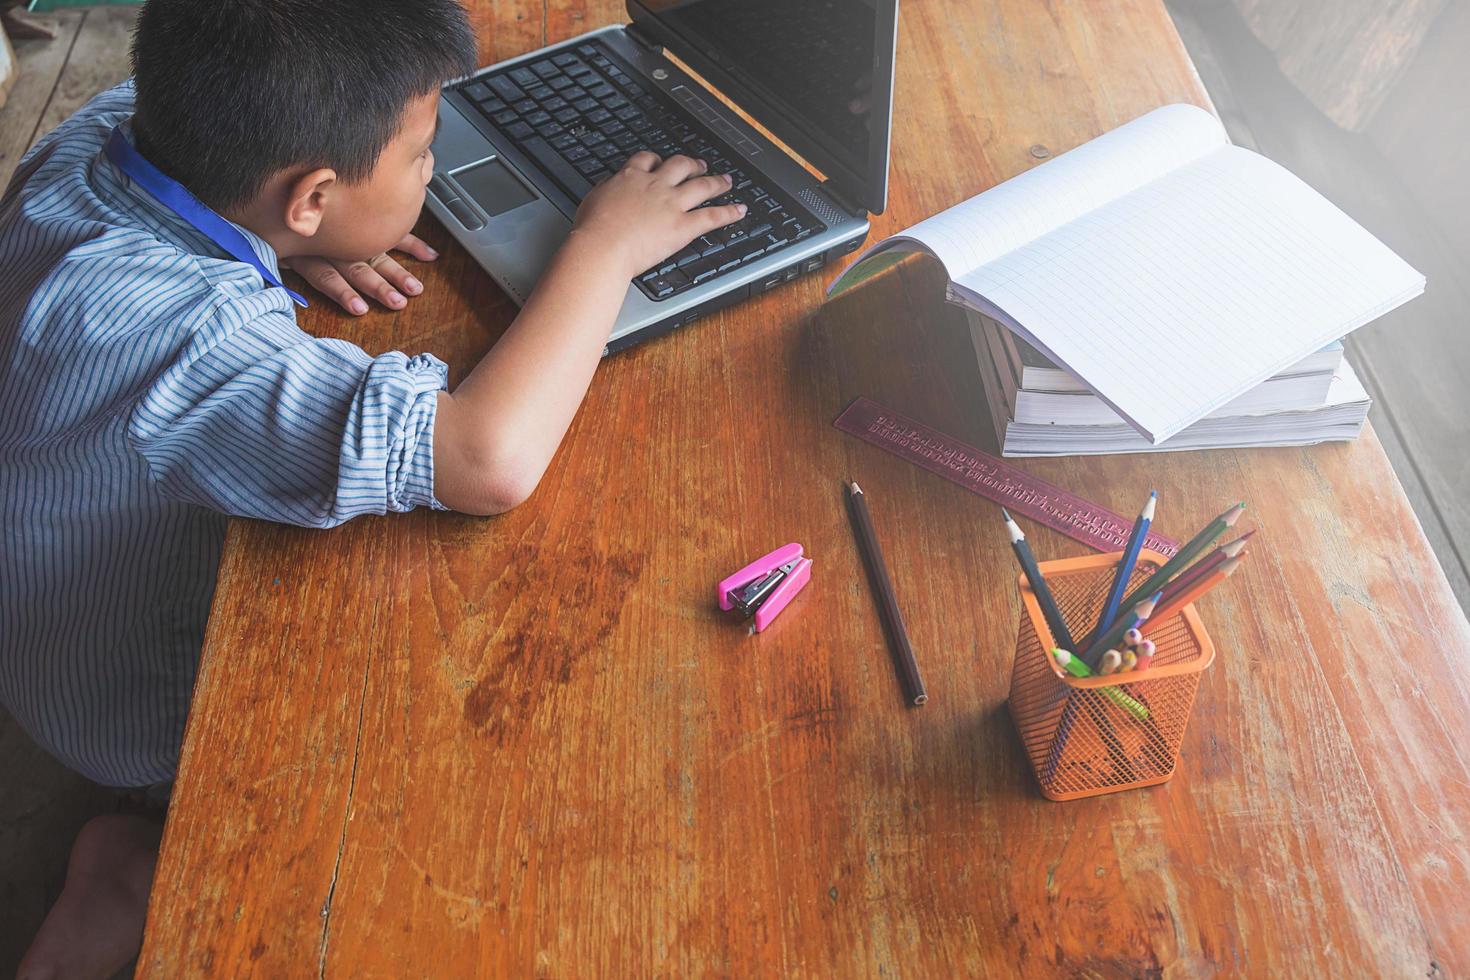 menino trabalhando em um laptop ao lado de um copo de lápis sobre uma mesa de madeira foto